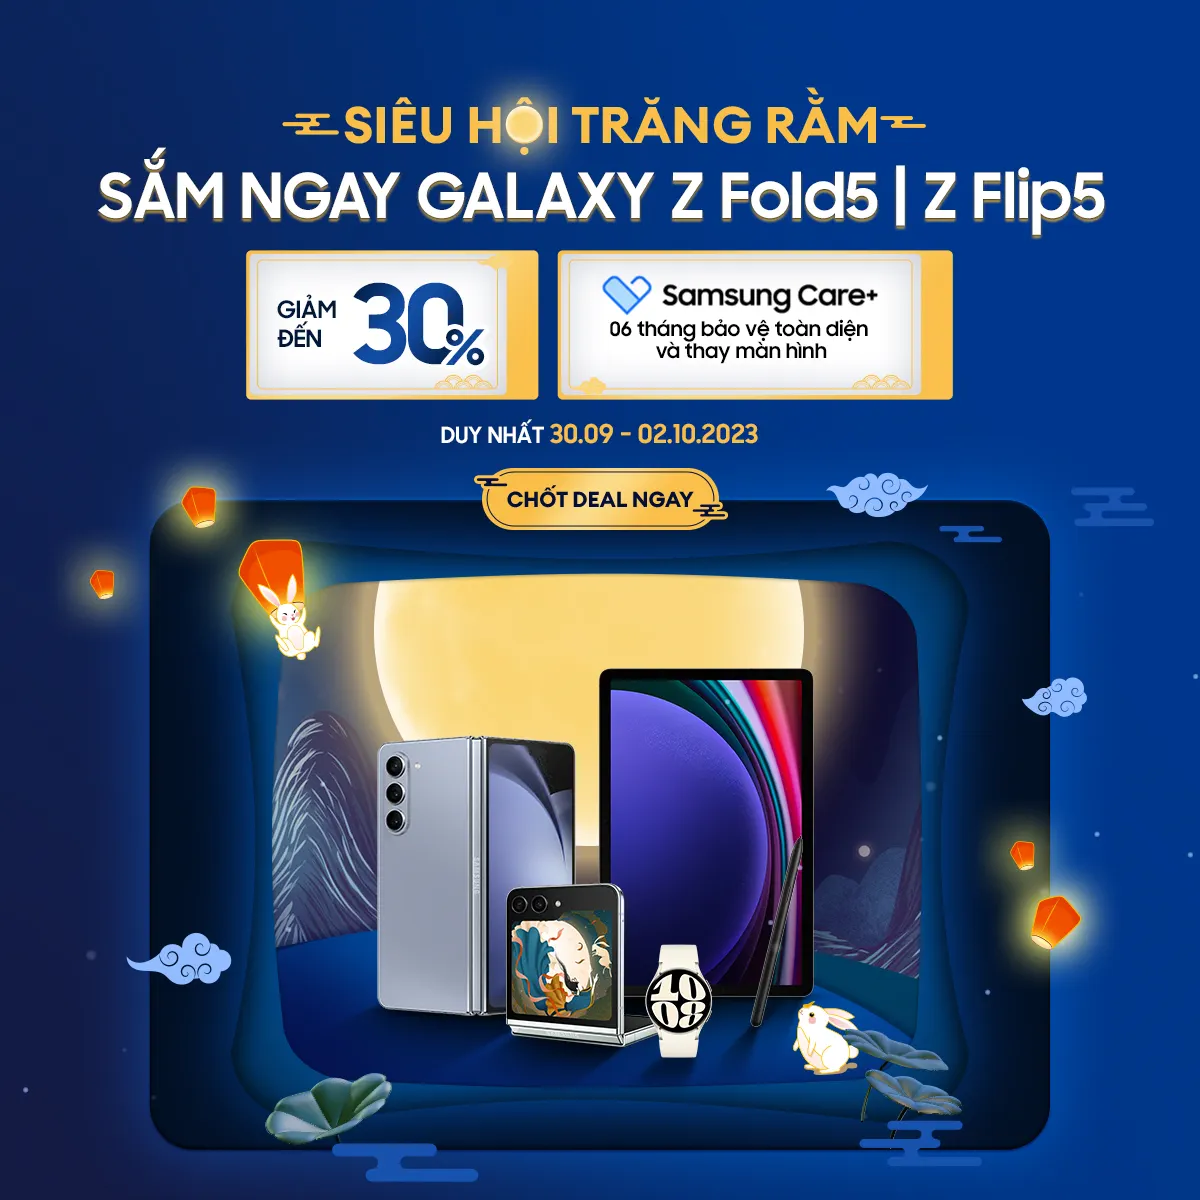 Siêu Hội Trăng Rằm – Samsung tung siêu ưu đãi lên đến 30% cho Galaxy Z Flip5 và Z Fold5